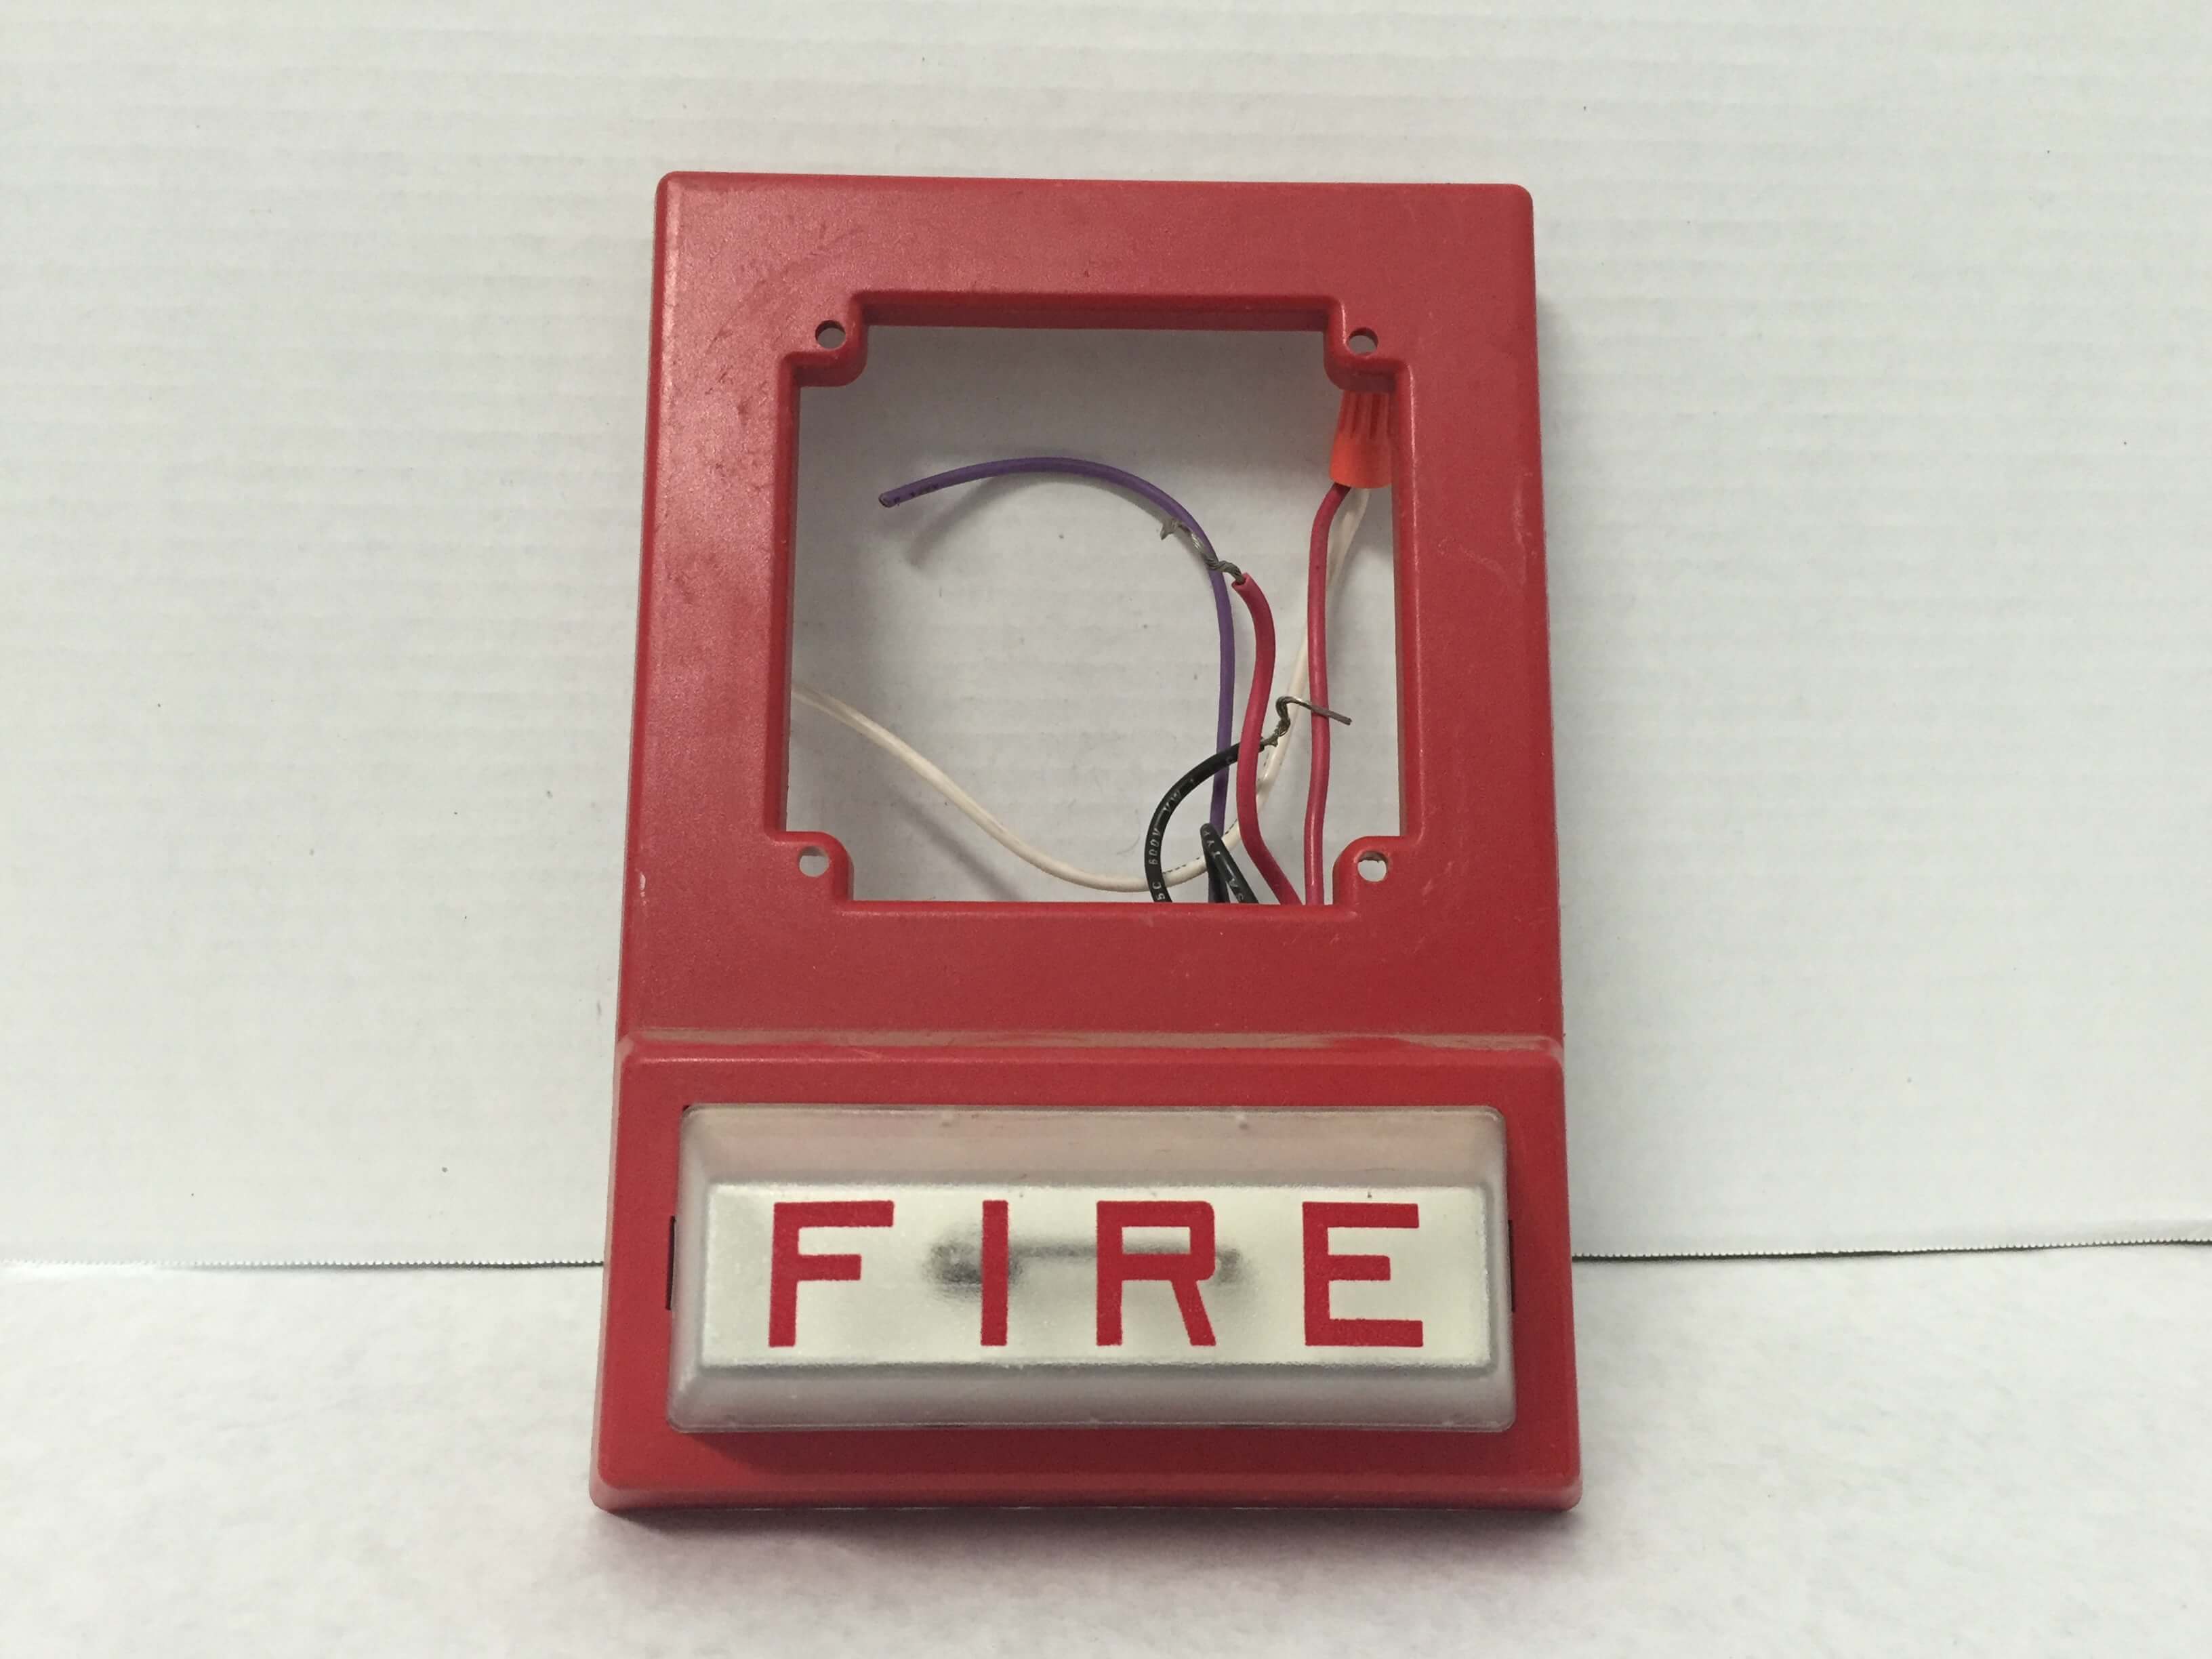 Simplex 4903-9101 - FireAlarms.tv - jjinc24/U8oL0's Fire Alarm ...